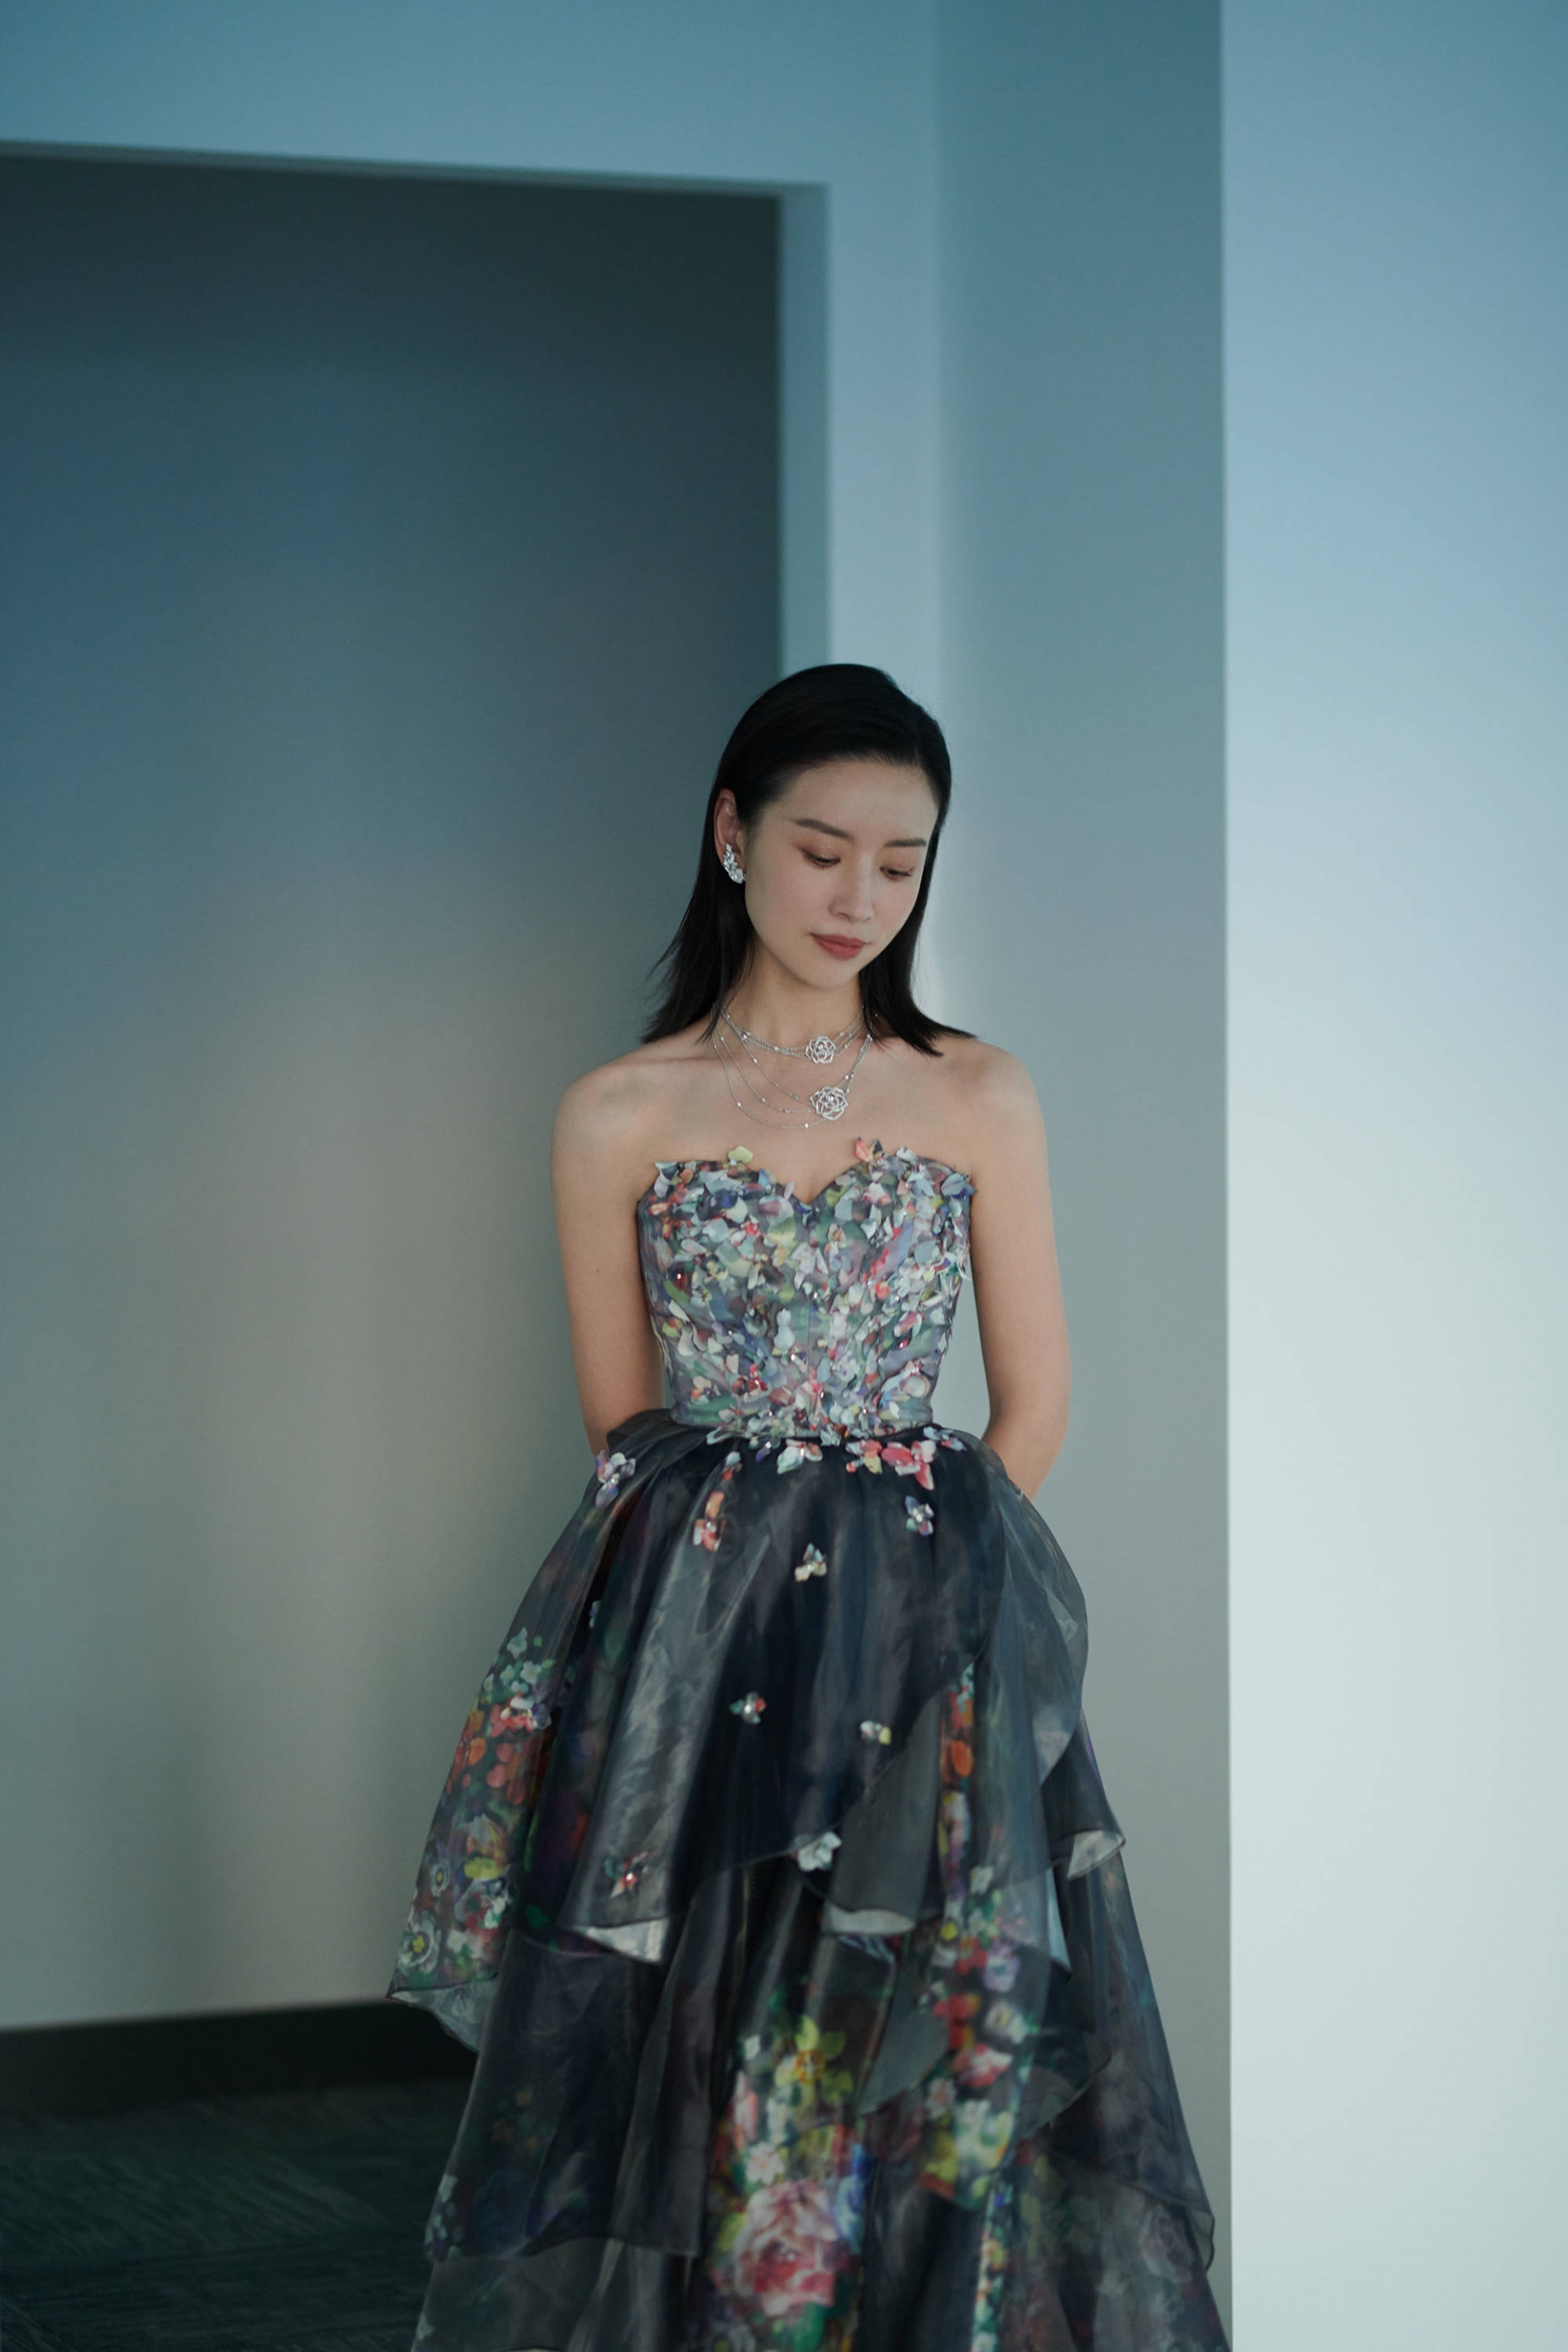 Chúc Anh Đài gây ấn tượng khi diện phong cách ngọt ngào với chiếc váy quây họa tiết hoa nổi phối voan tầng độc đáo